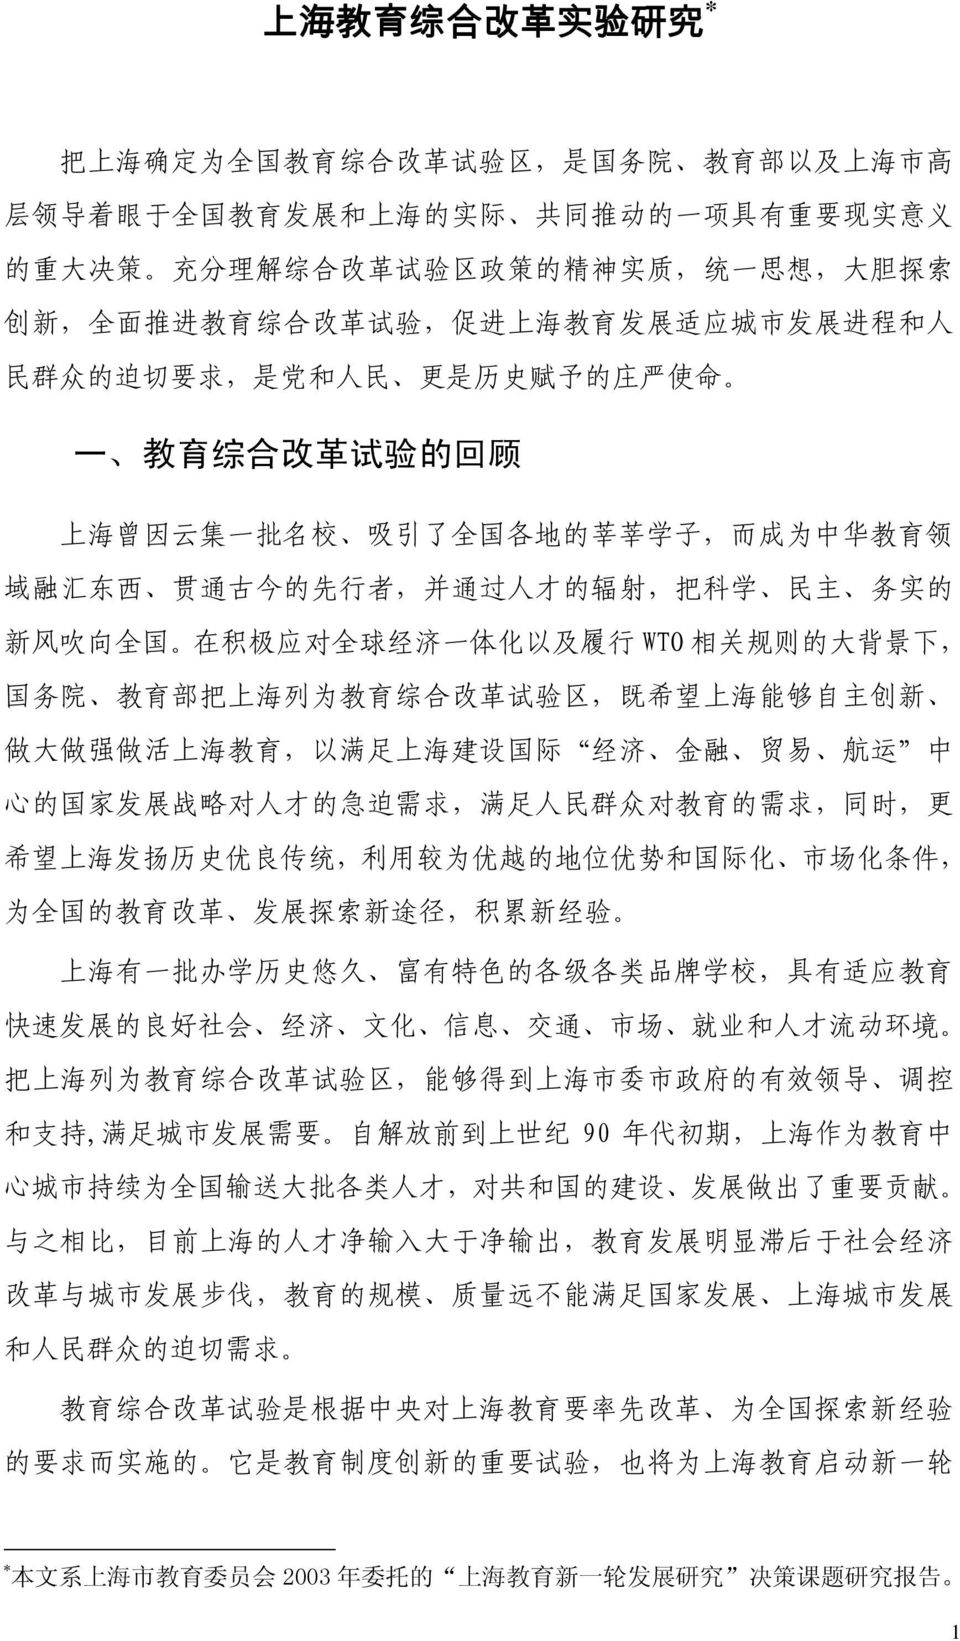 子, 而 成 为 中 华 教 育 领 域 融 汇 东 西 贯 通 古 今 的 先 行 者, 并 通 过 人 才 的 辐 射, 把 科 学 民 主 务 实 的 新 风 吹 向 全 国 在 积 极 应 对 全 球 经 济 一 体 化 以 及 履 行 WTO 相 关 规 则 的 大 背 景 下, 国 务 院 教 育 部 把 上 海 列 为 教 育 综 合 改 革 试 验 区, 既 希 望 上 海 能